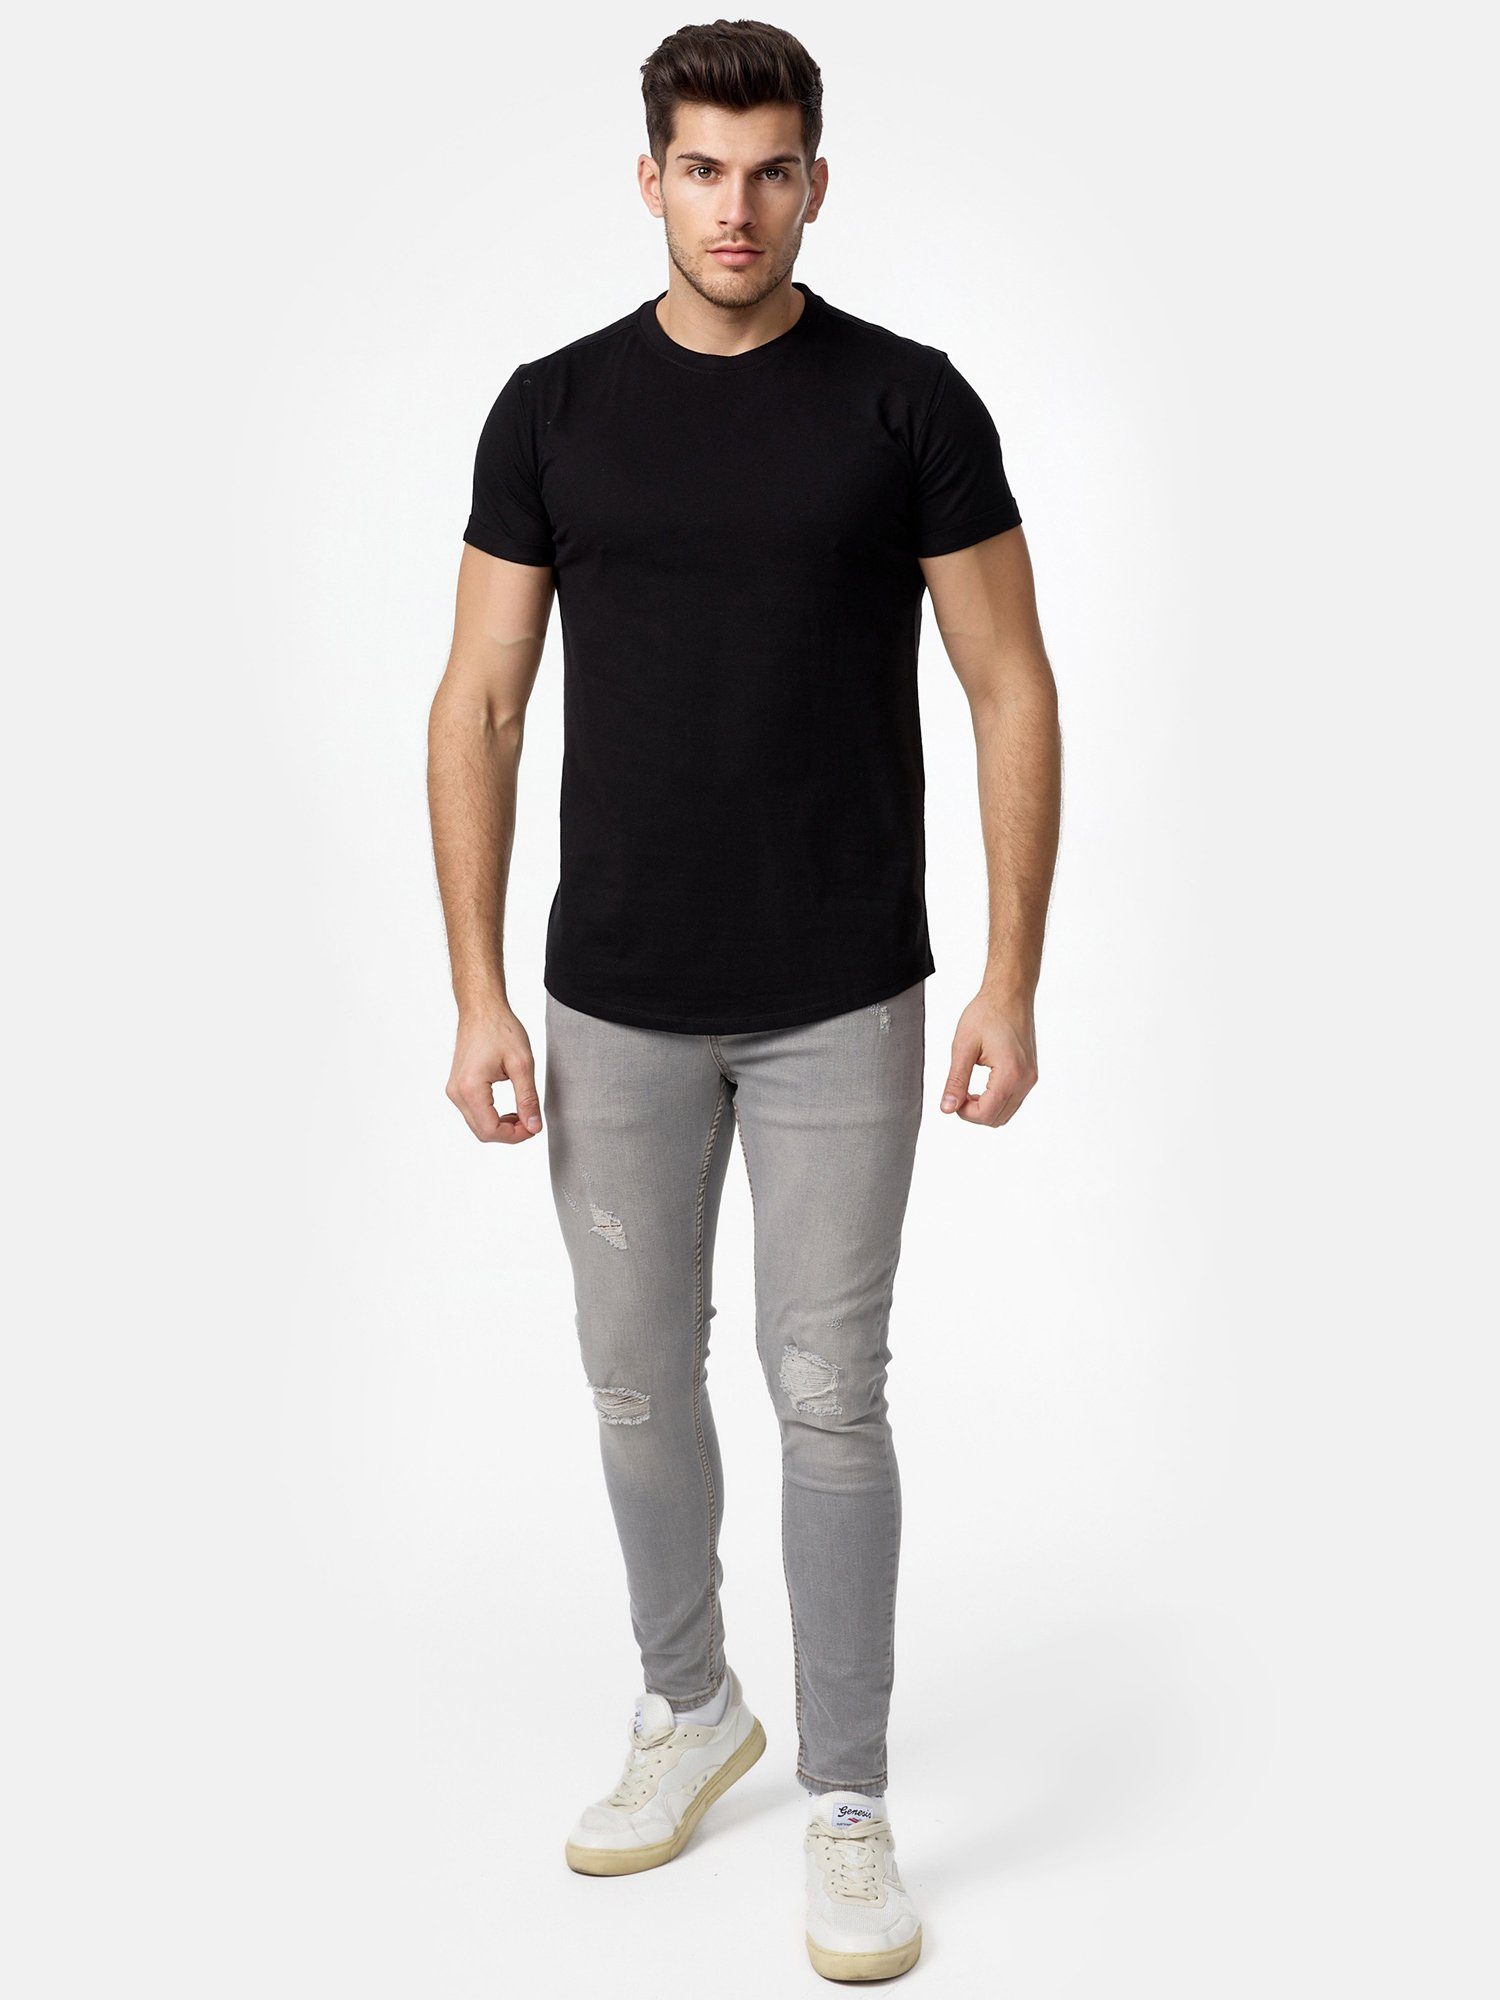 E105 T-Shirt Herren Rundhalsshirt Basic Tazzio schwarz